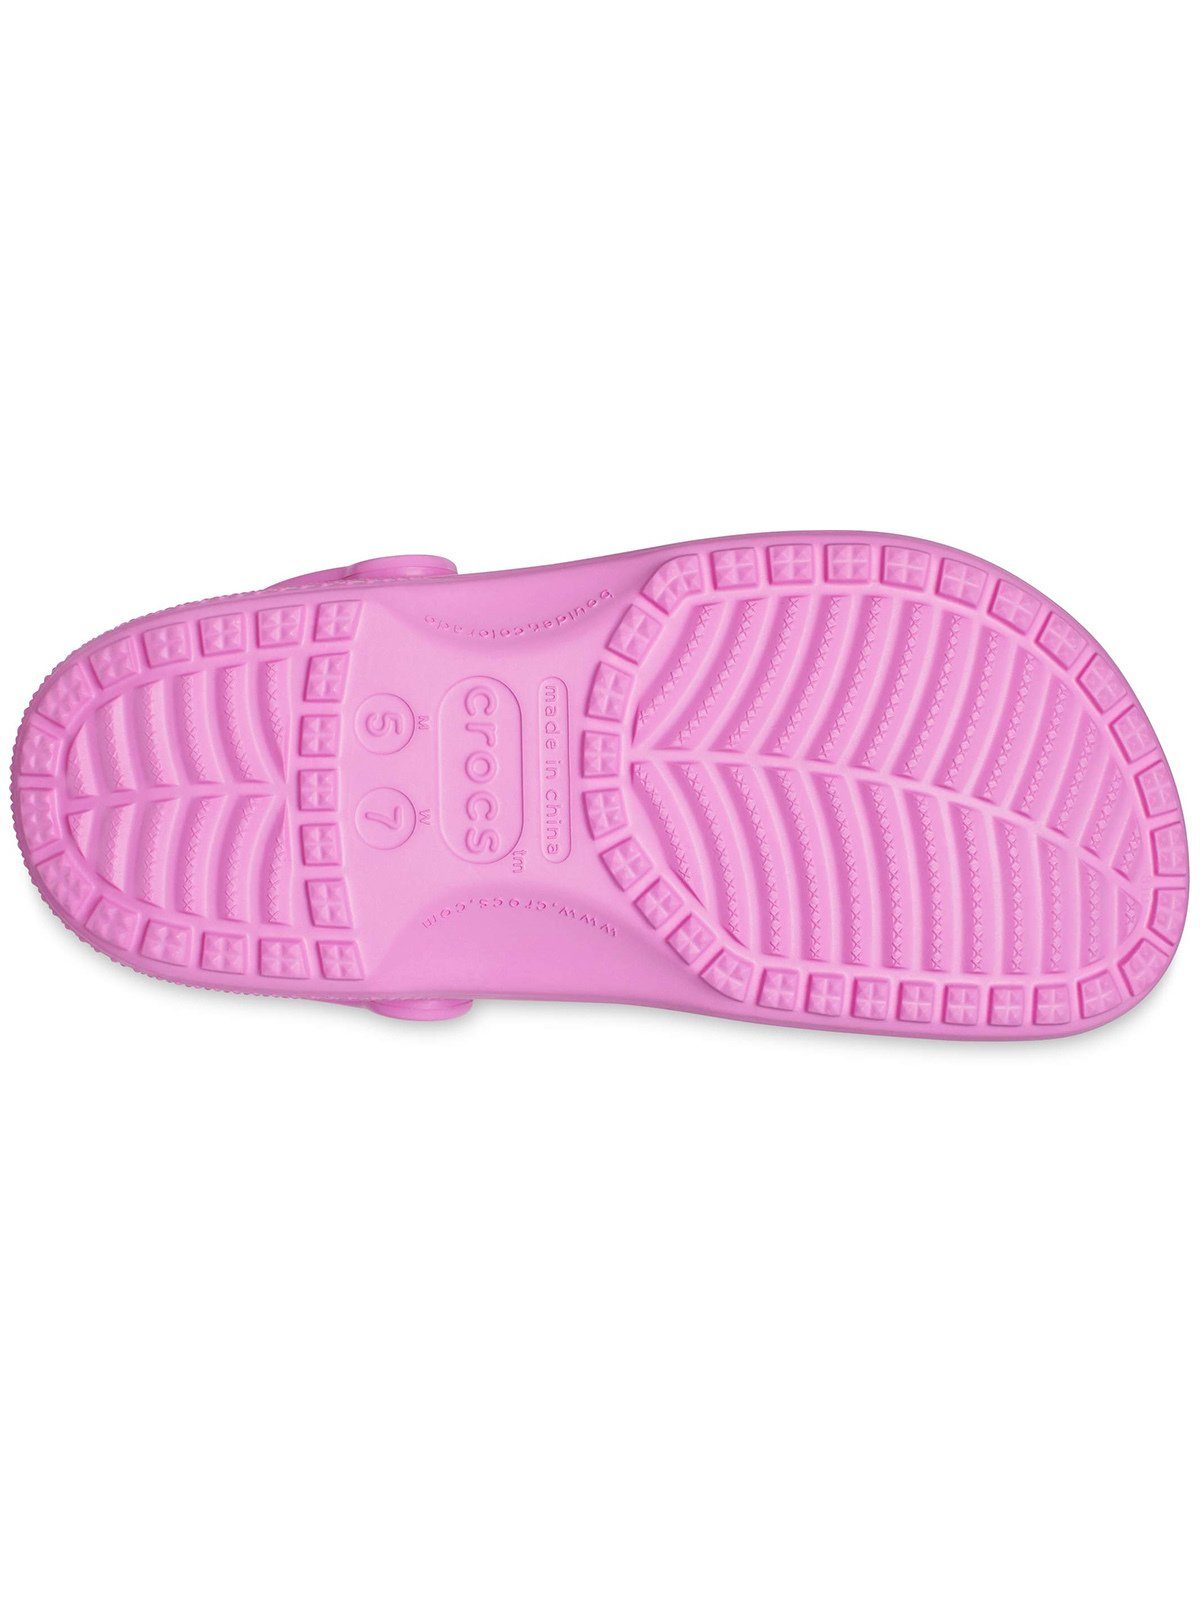 Crocs Crocs Classic taffy Clog pink Clog